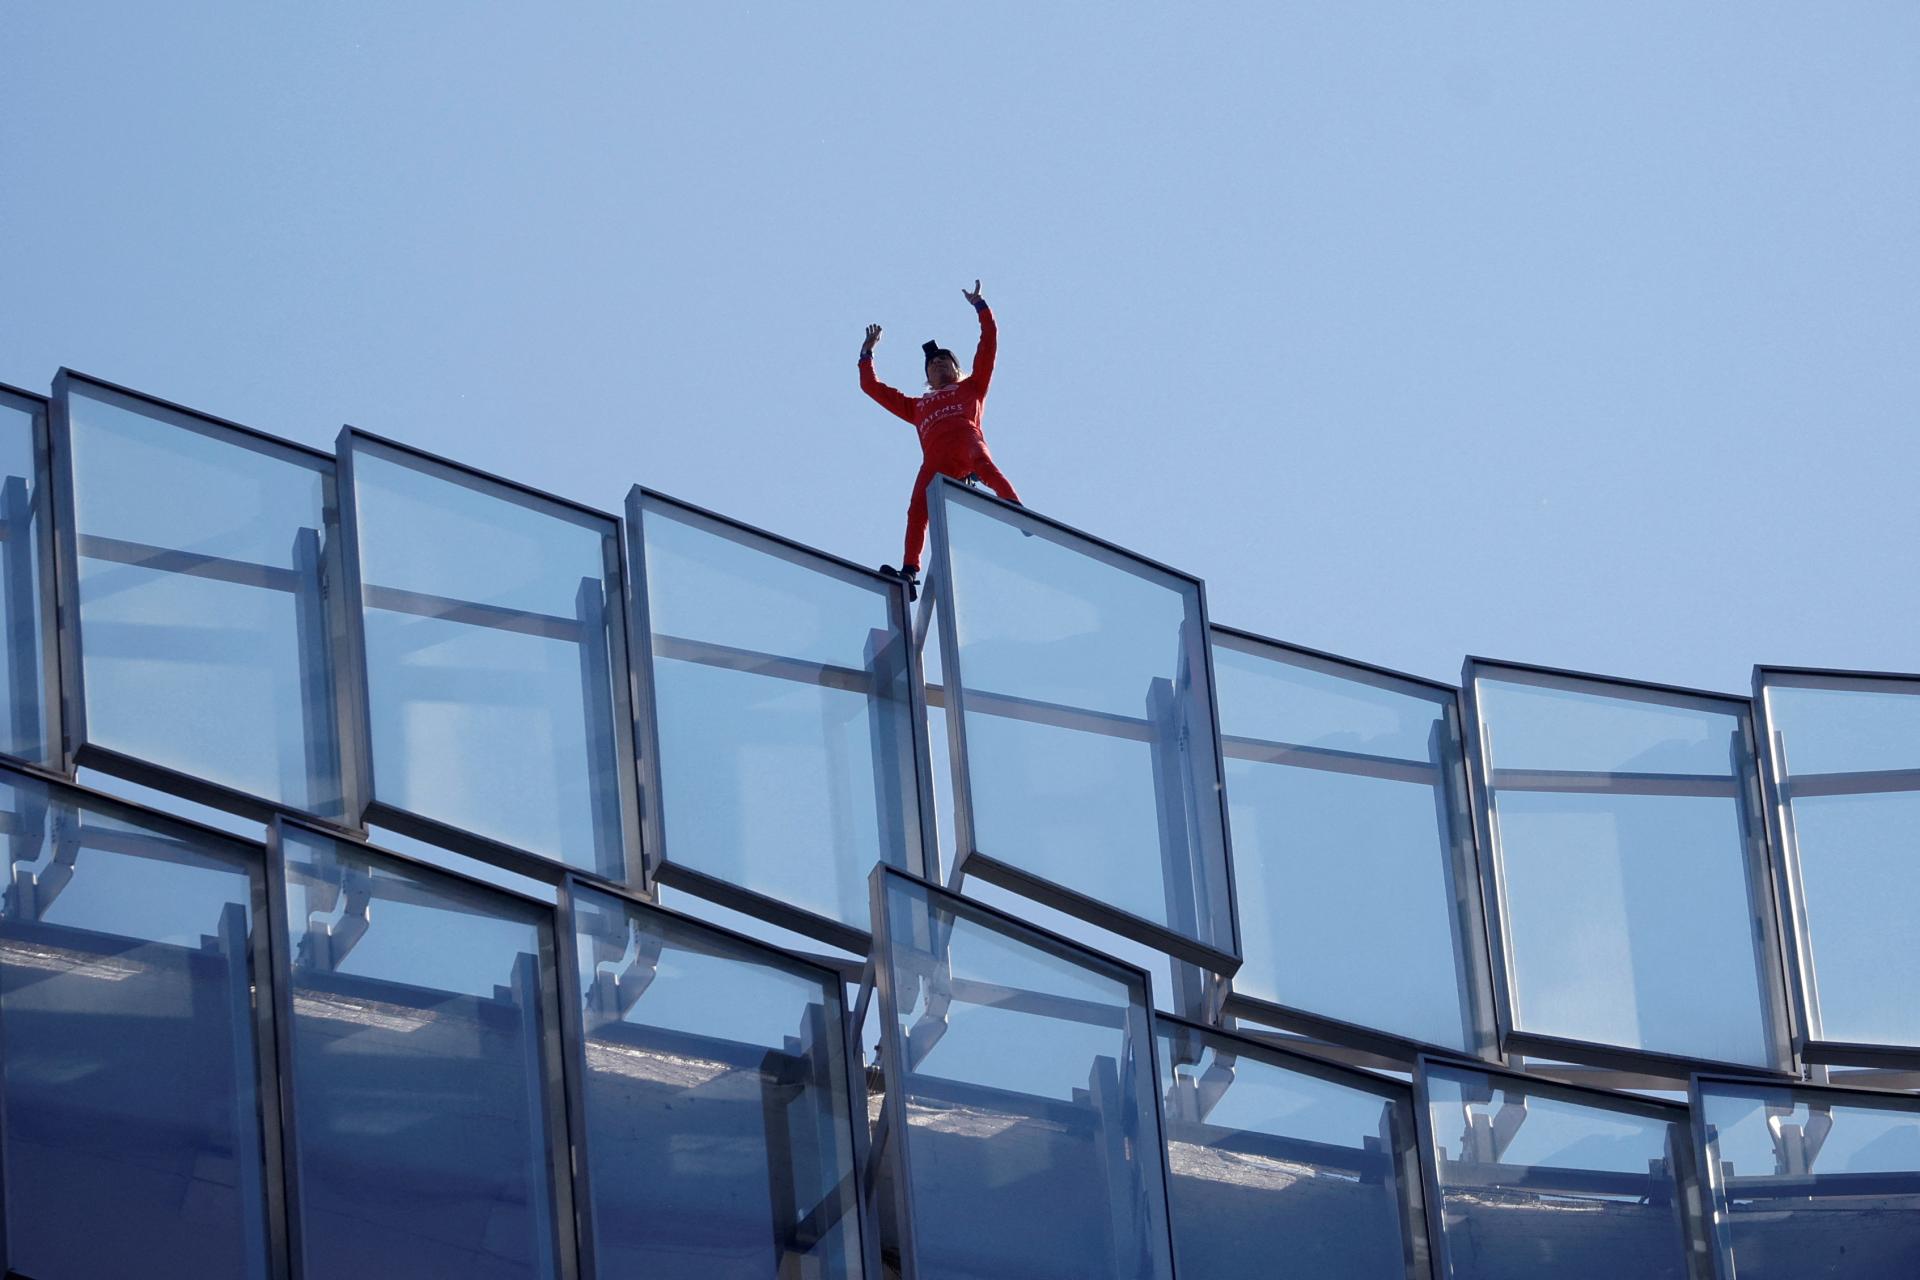 Francúzsky lezec na protest proti dôchodkovej reforme zdolal mrakodrap. Macron sa má vrátiť na zem, tvrdí